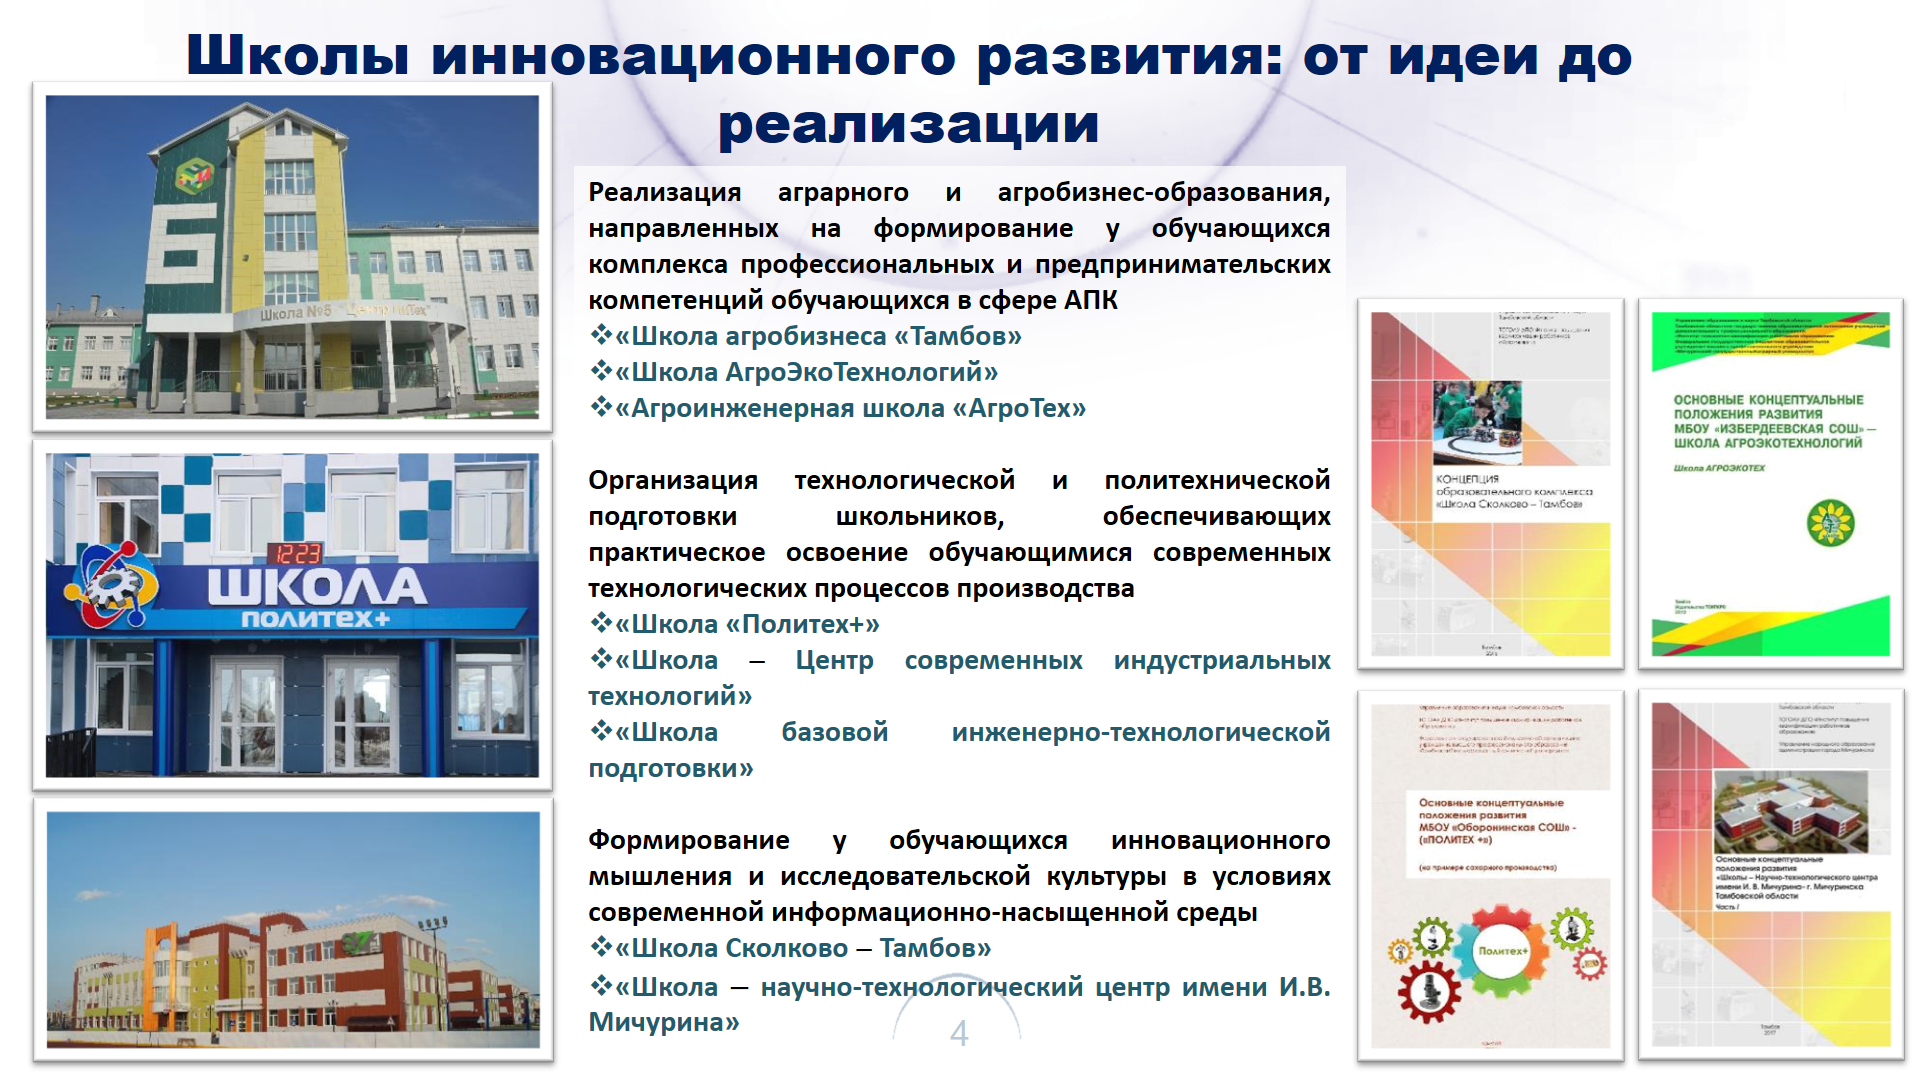 Агробизнес-образование в Тамбовской области: профессиональные компетенции для развития региона